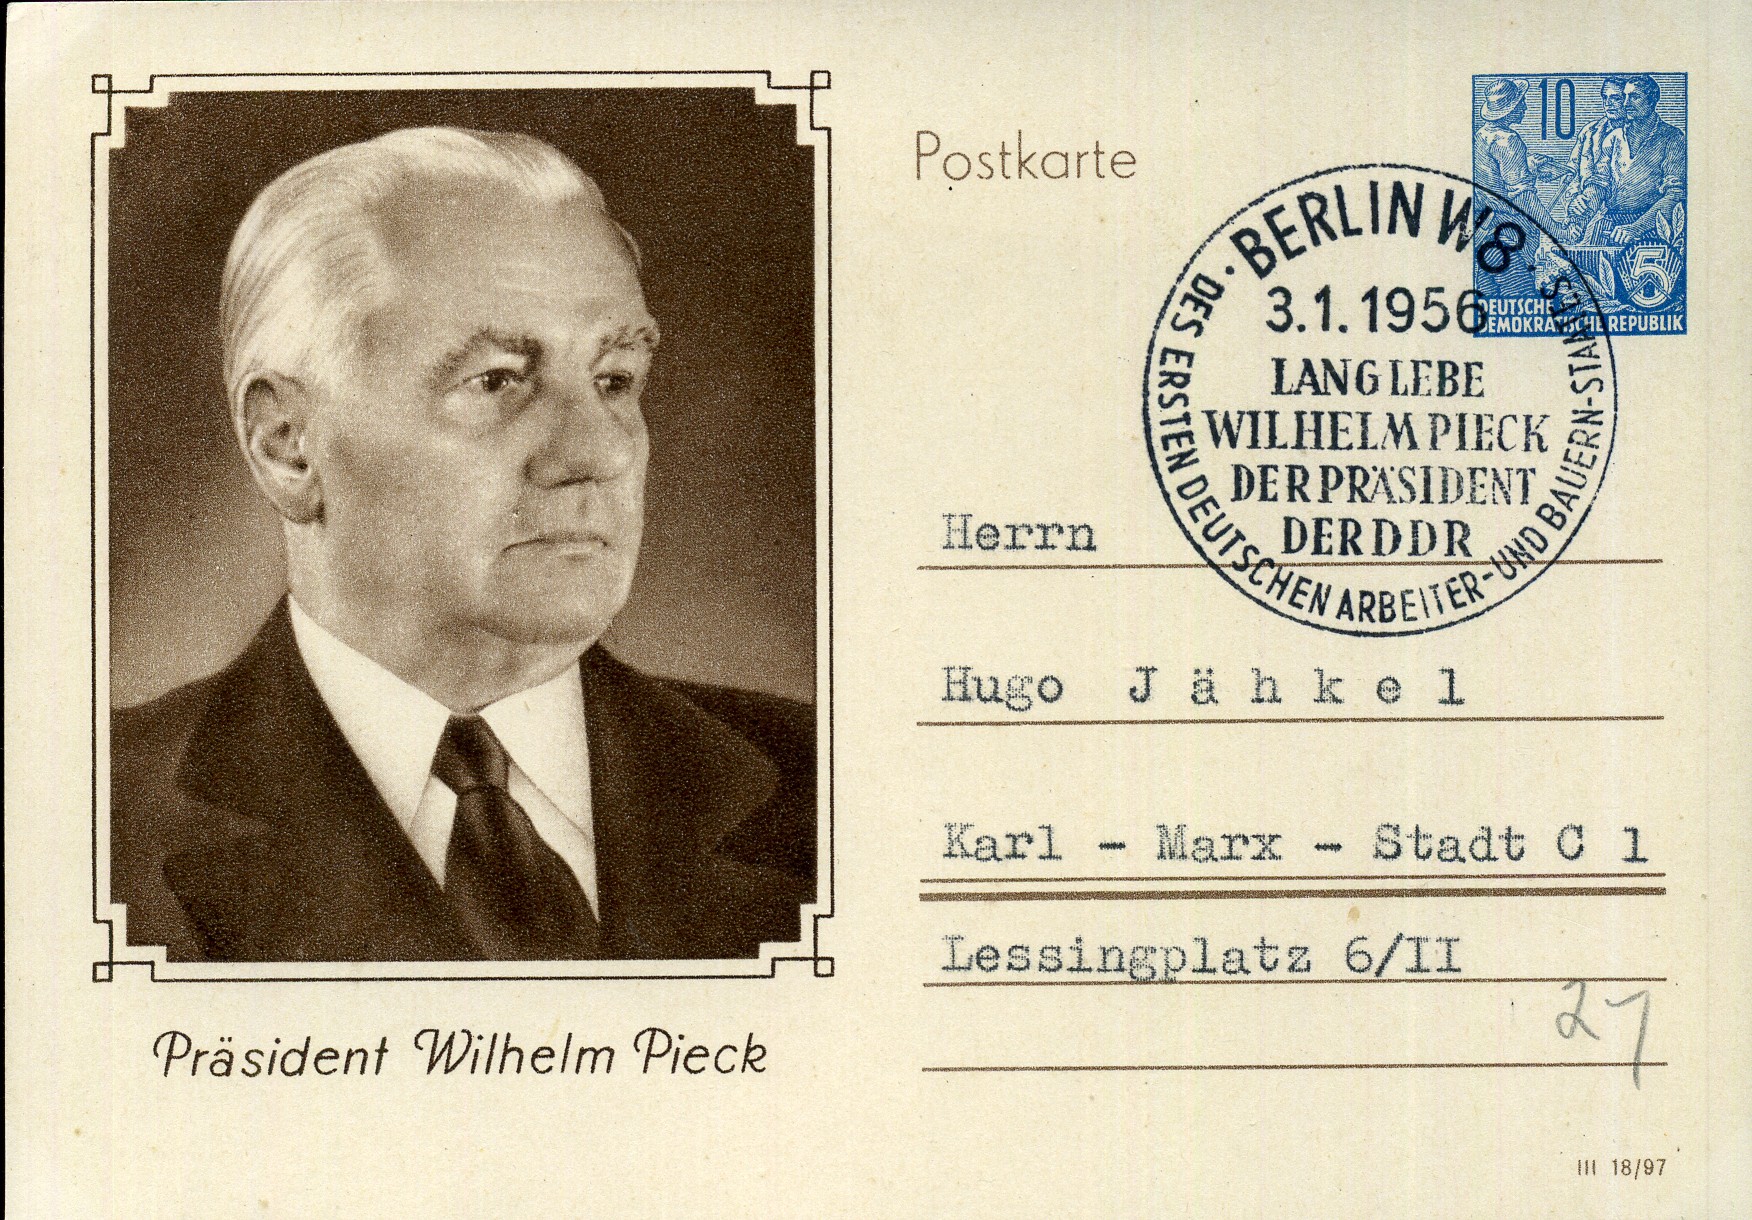 Lang lebe Wilhelm Pieck der Präsident der DRR des ersten deutschen Arbeiter- und Bauern-Staates - Sonderstempel - Berlin